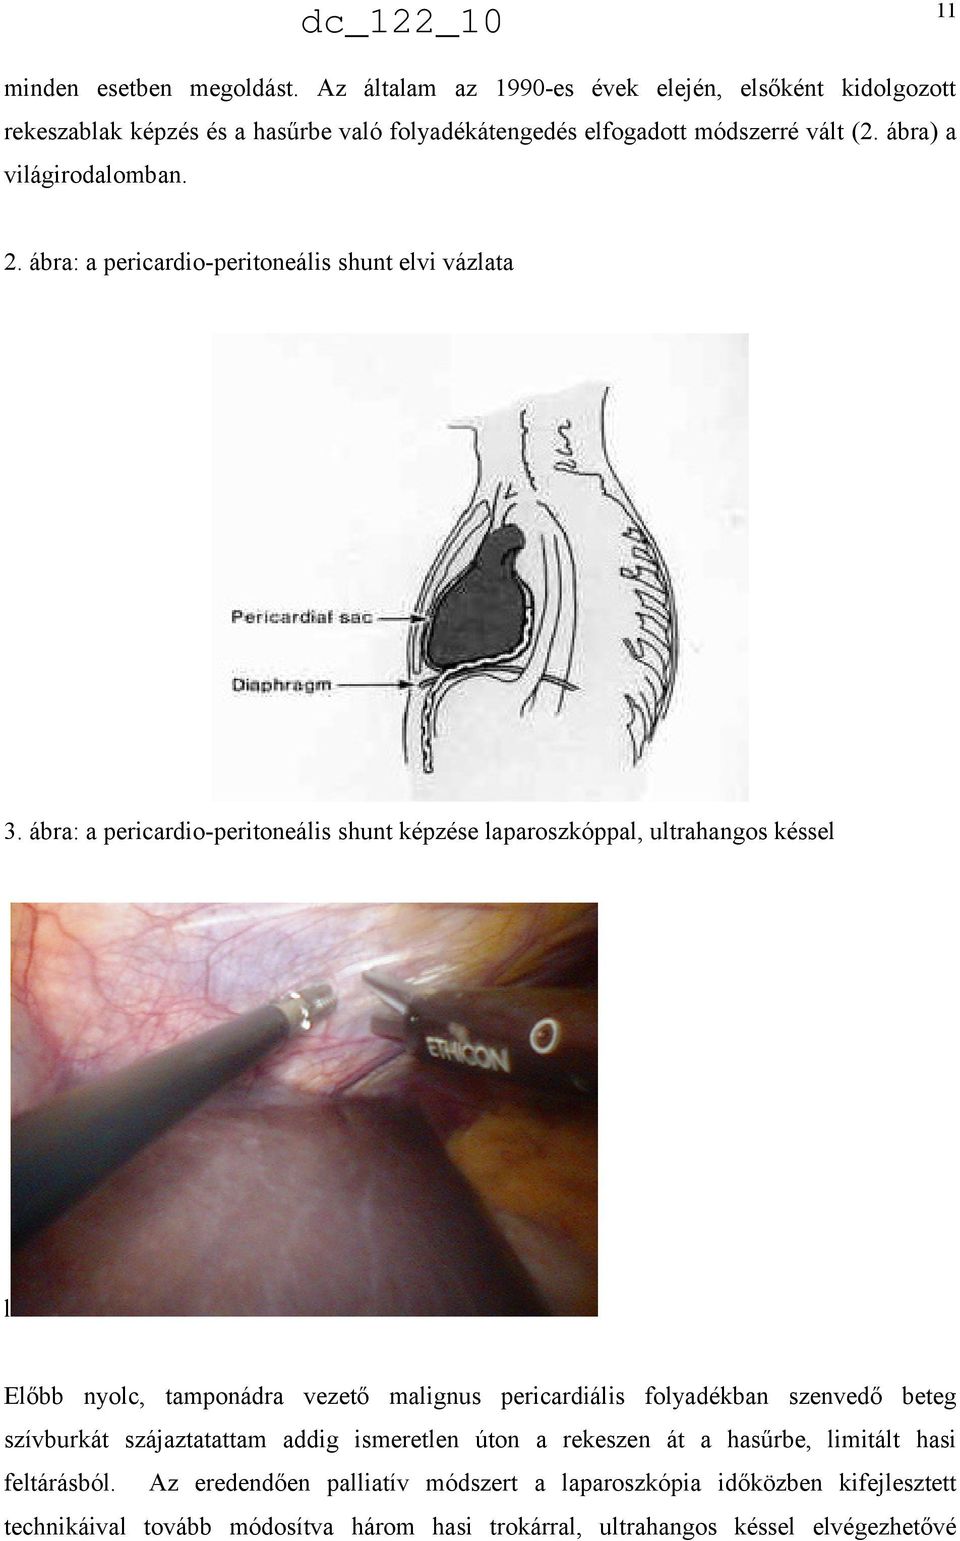 ábra: a pericardio-peritoneális shunt képzése laparoszkóppal, ultrahangos késsel l Előbb nyolc, tamponádra vezető malignus pericardiális folyadékban szenvedő beteg